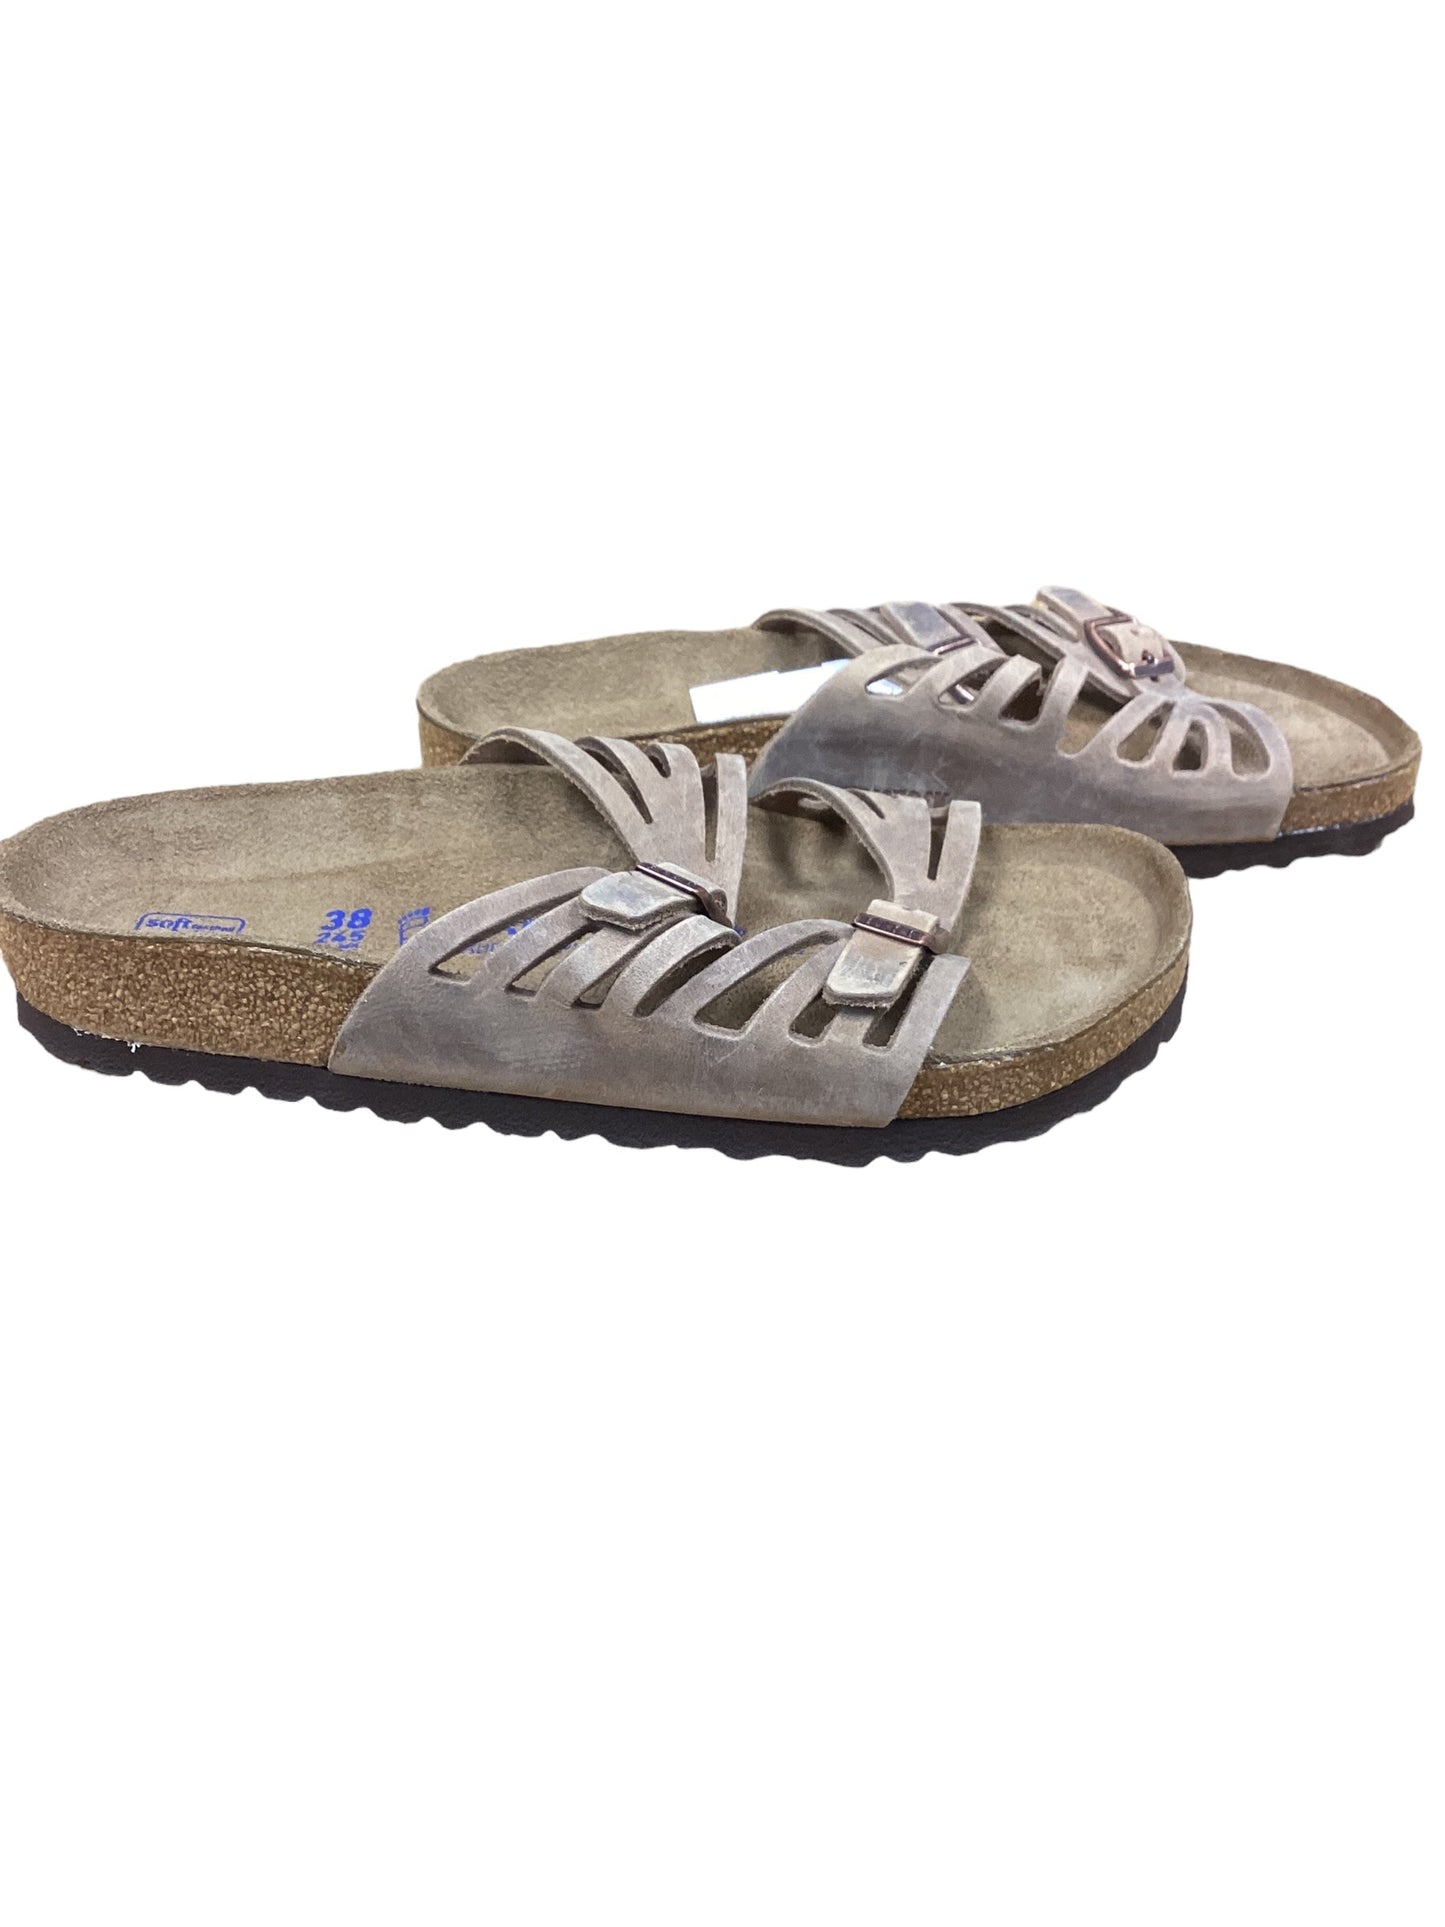 Brown Sandals Flats Birkenstock, Size 7.5